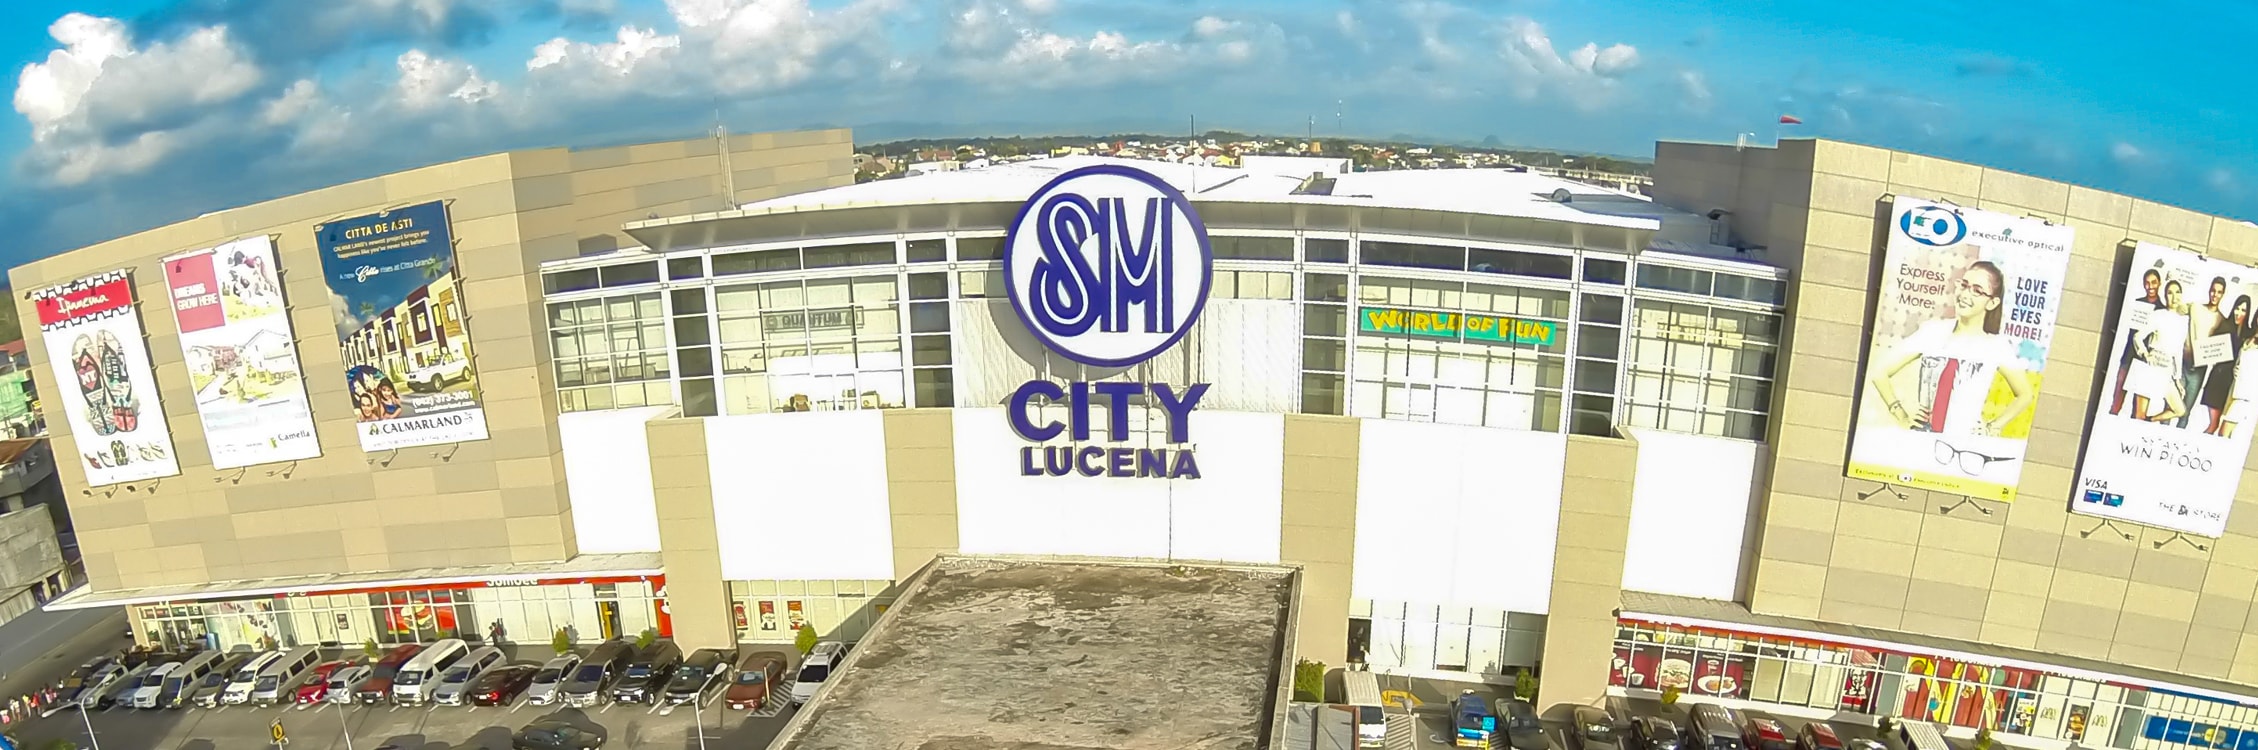 SM City Lucena